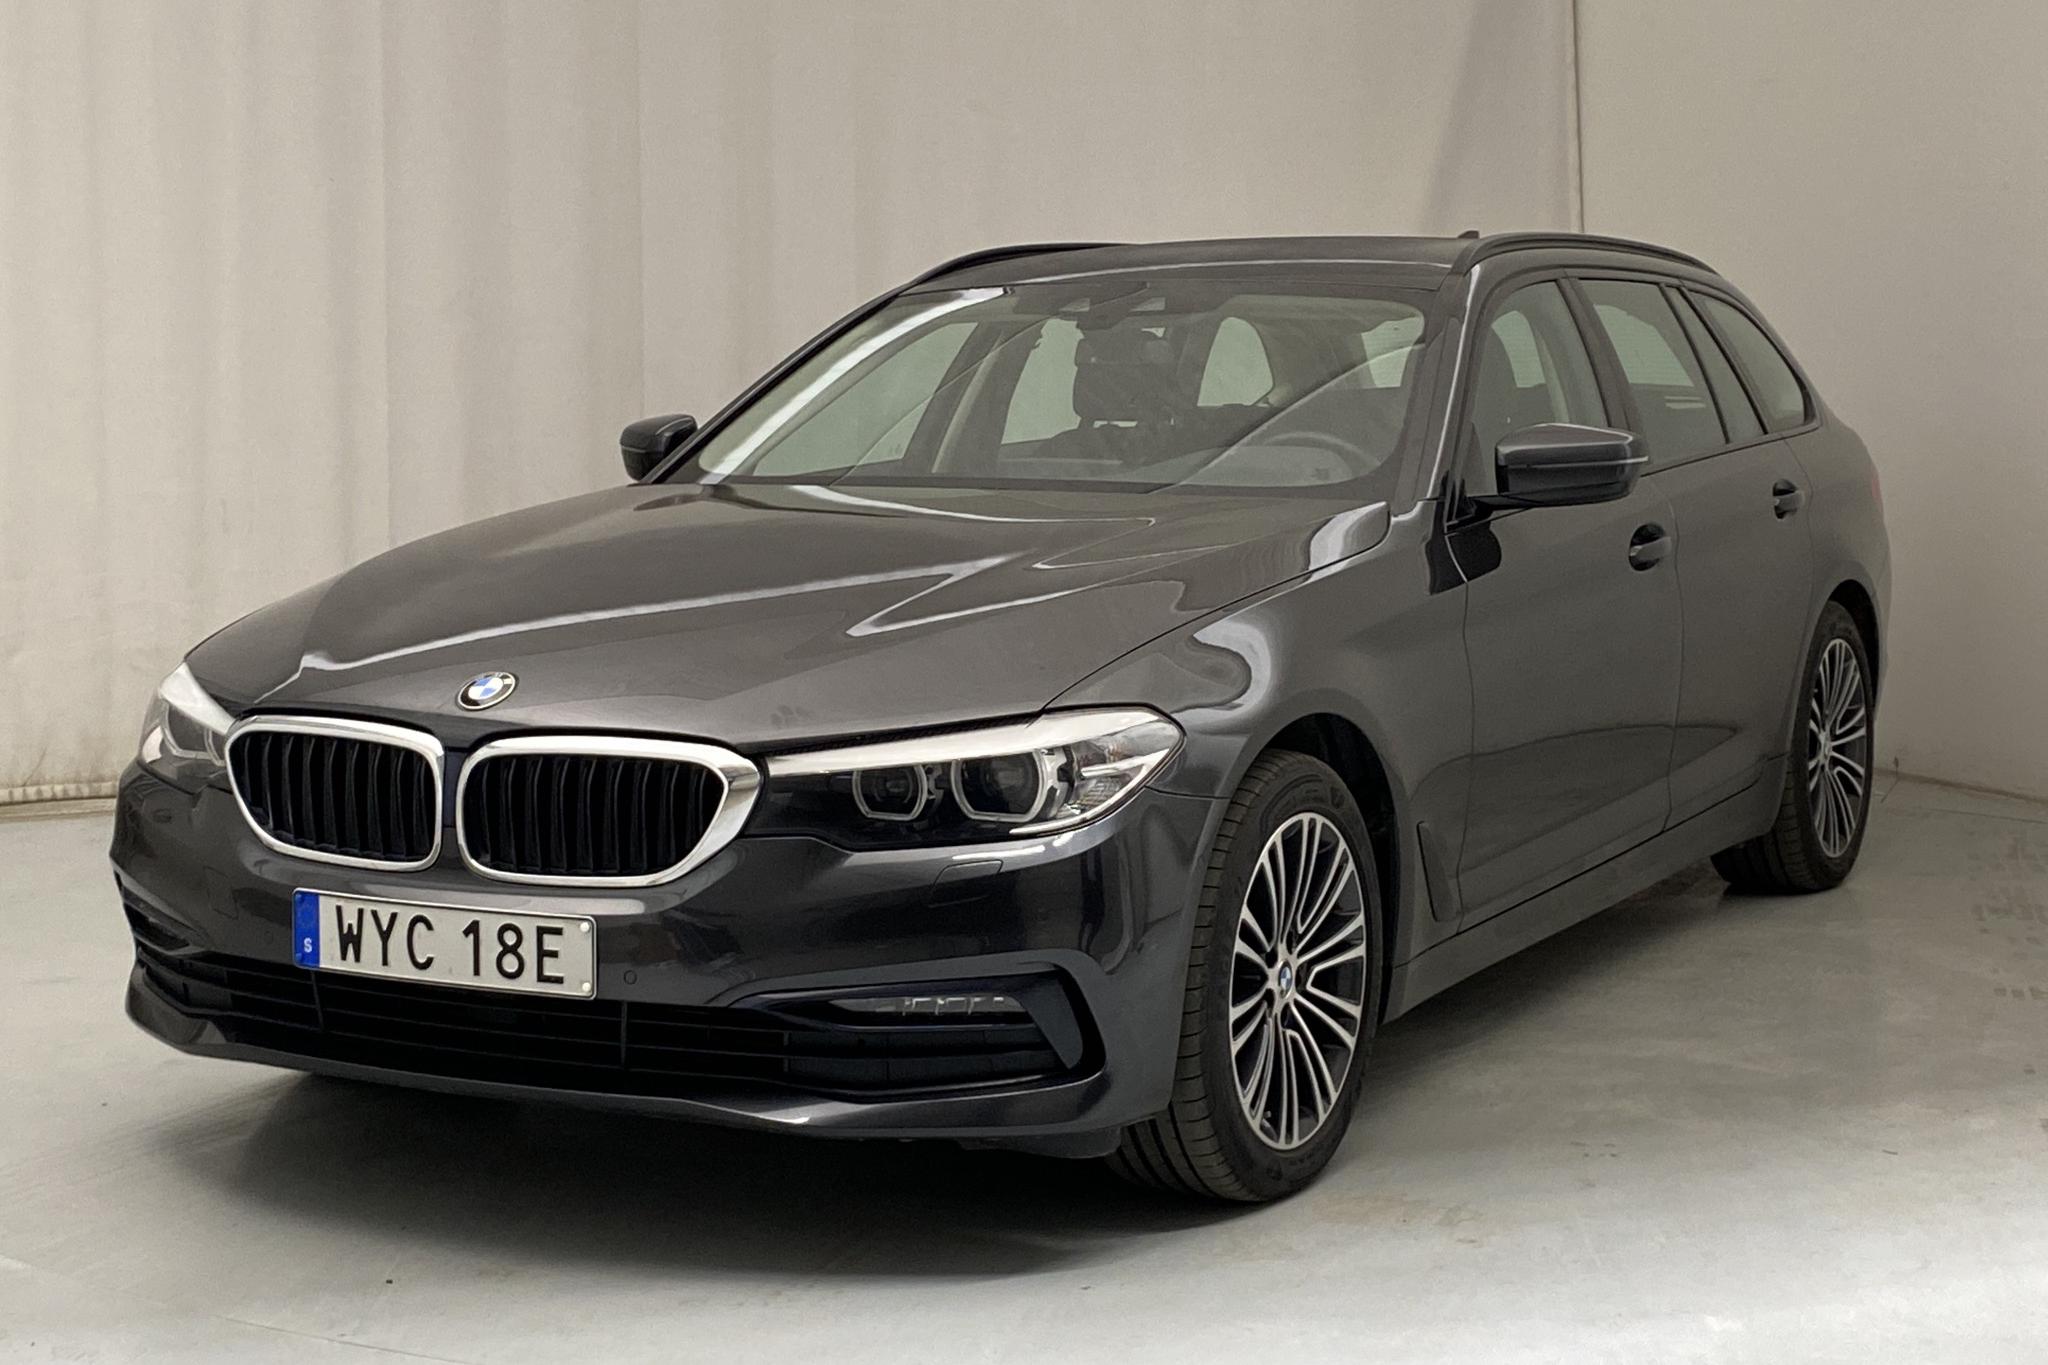 BMW 520d xDrive Touring, G31 (190hk) - 72 010 km - Automatic - gray - 2019